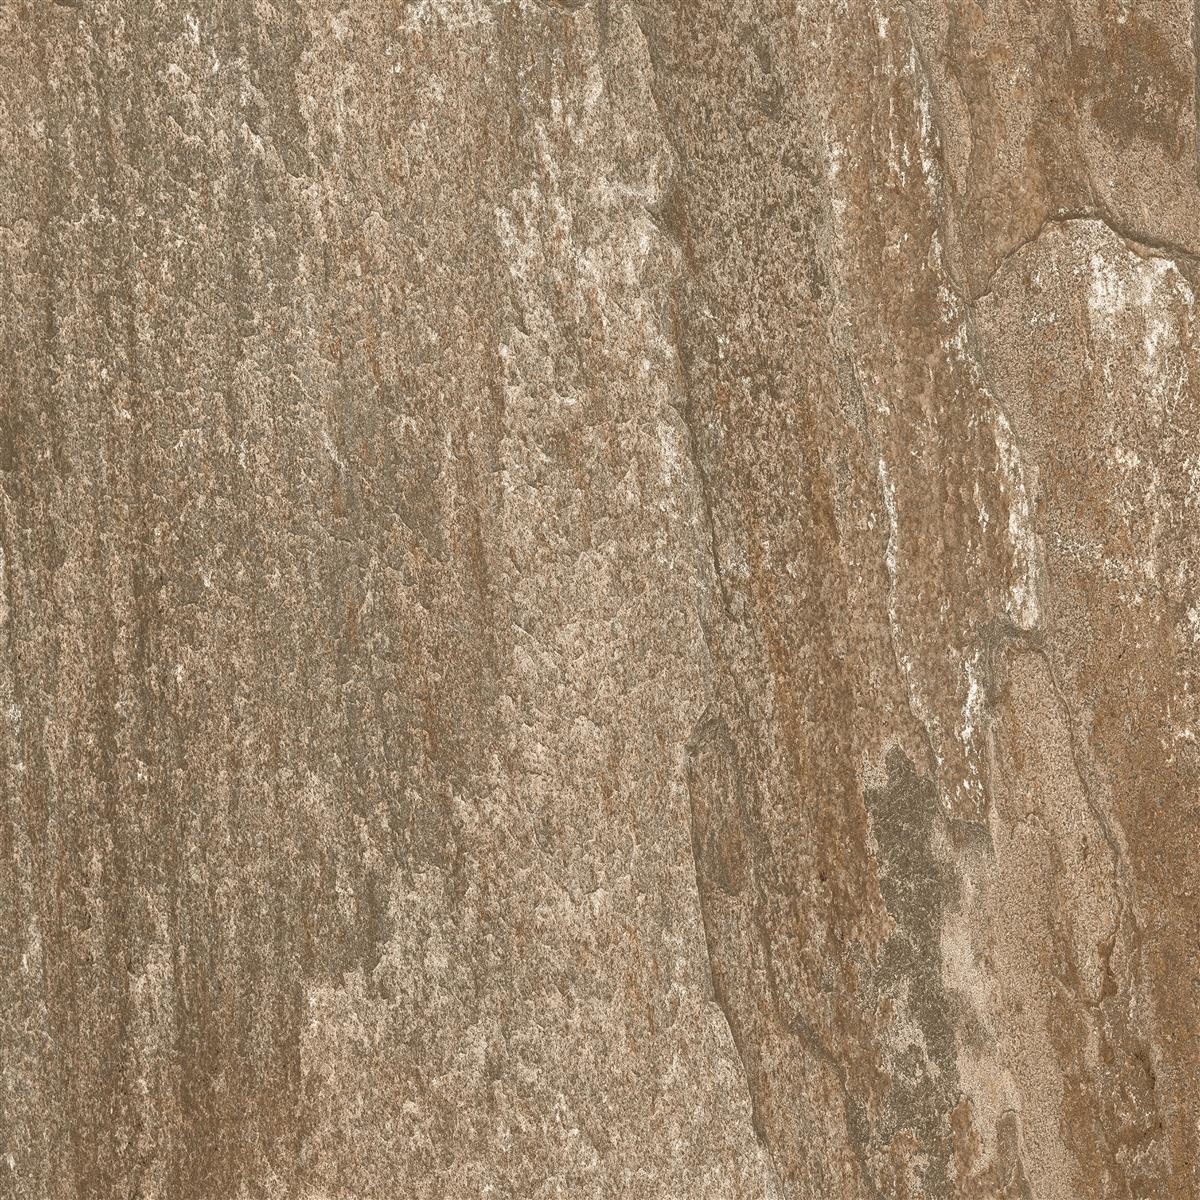 Terrassenplatten Livelong Braun 60x60x2cm